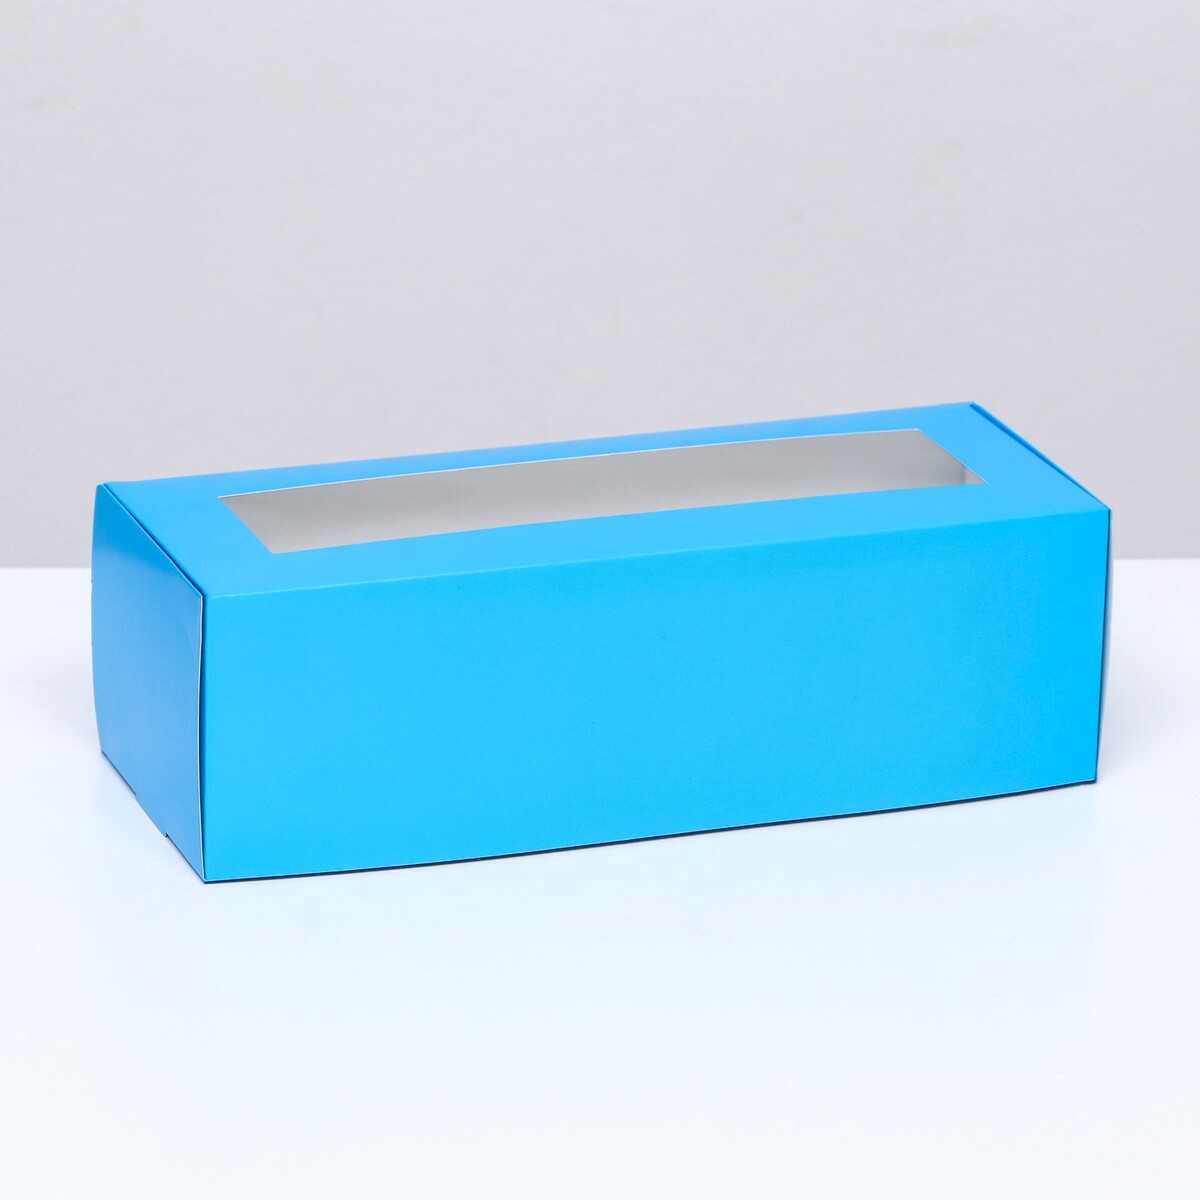 Коробка складная с окном под рулет, голубая, 26 х 10 х 8 см коробка под рулет белая 18 5 х 6 5 х 6 5 см